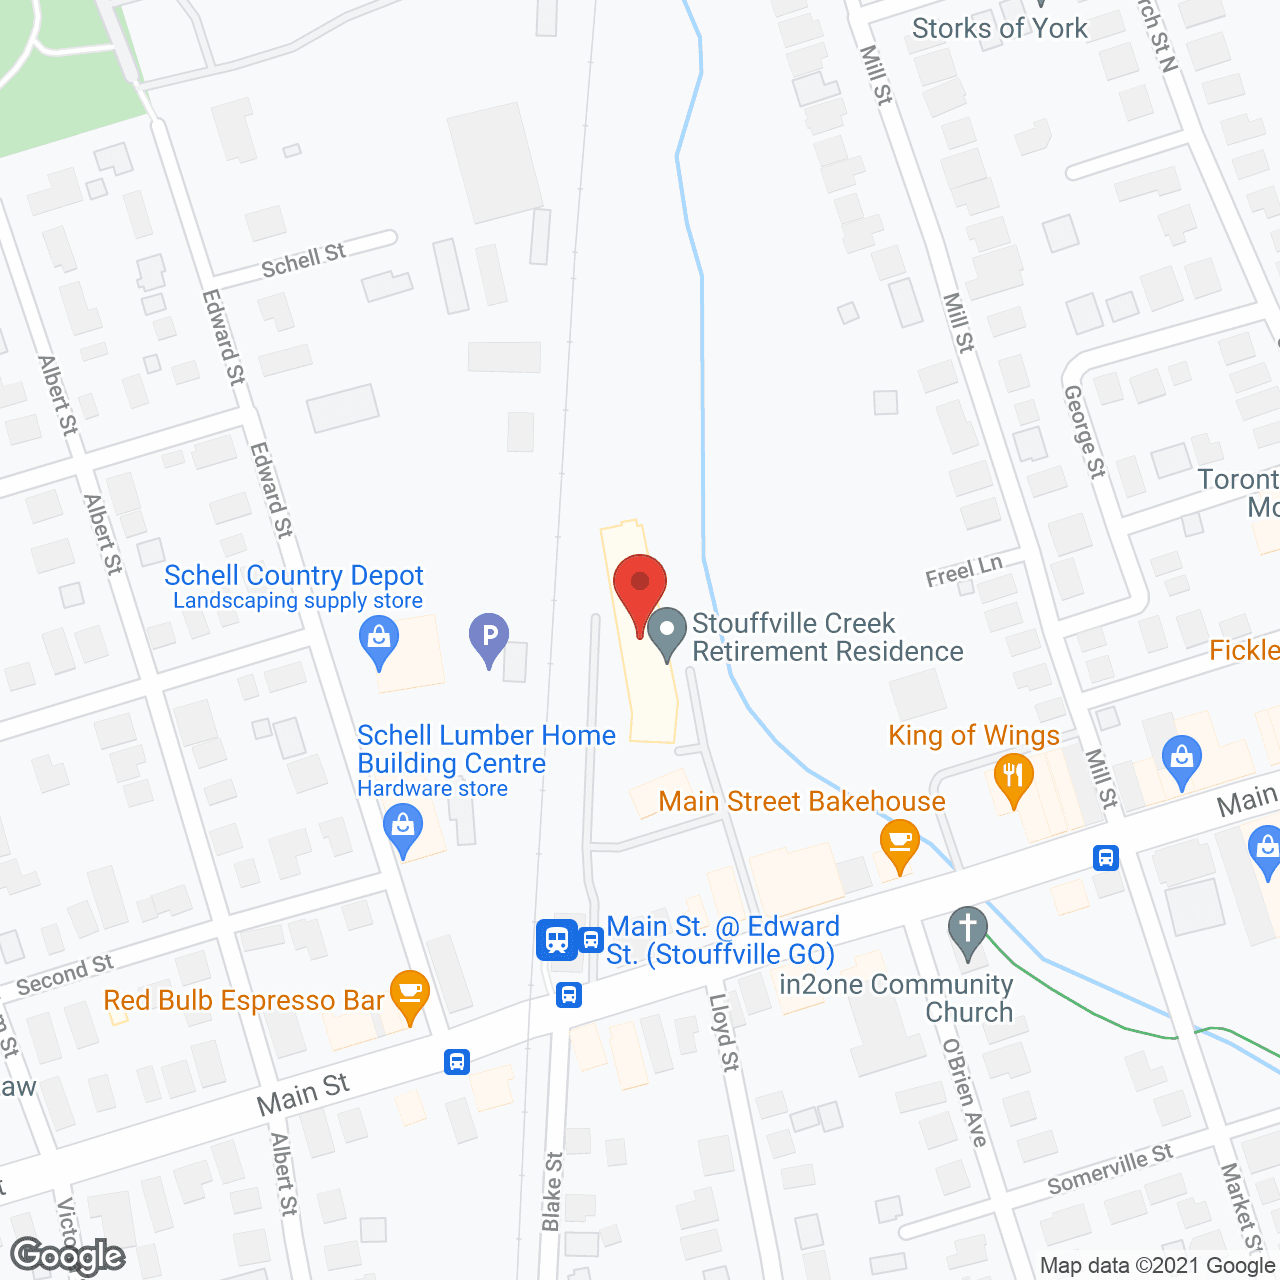 Stouffville Creek Retirement Residence in google map